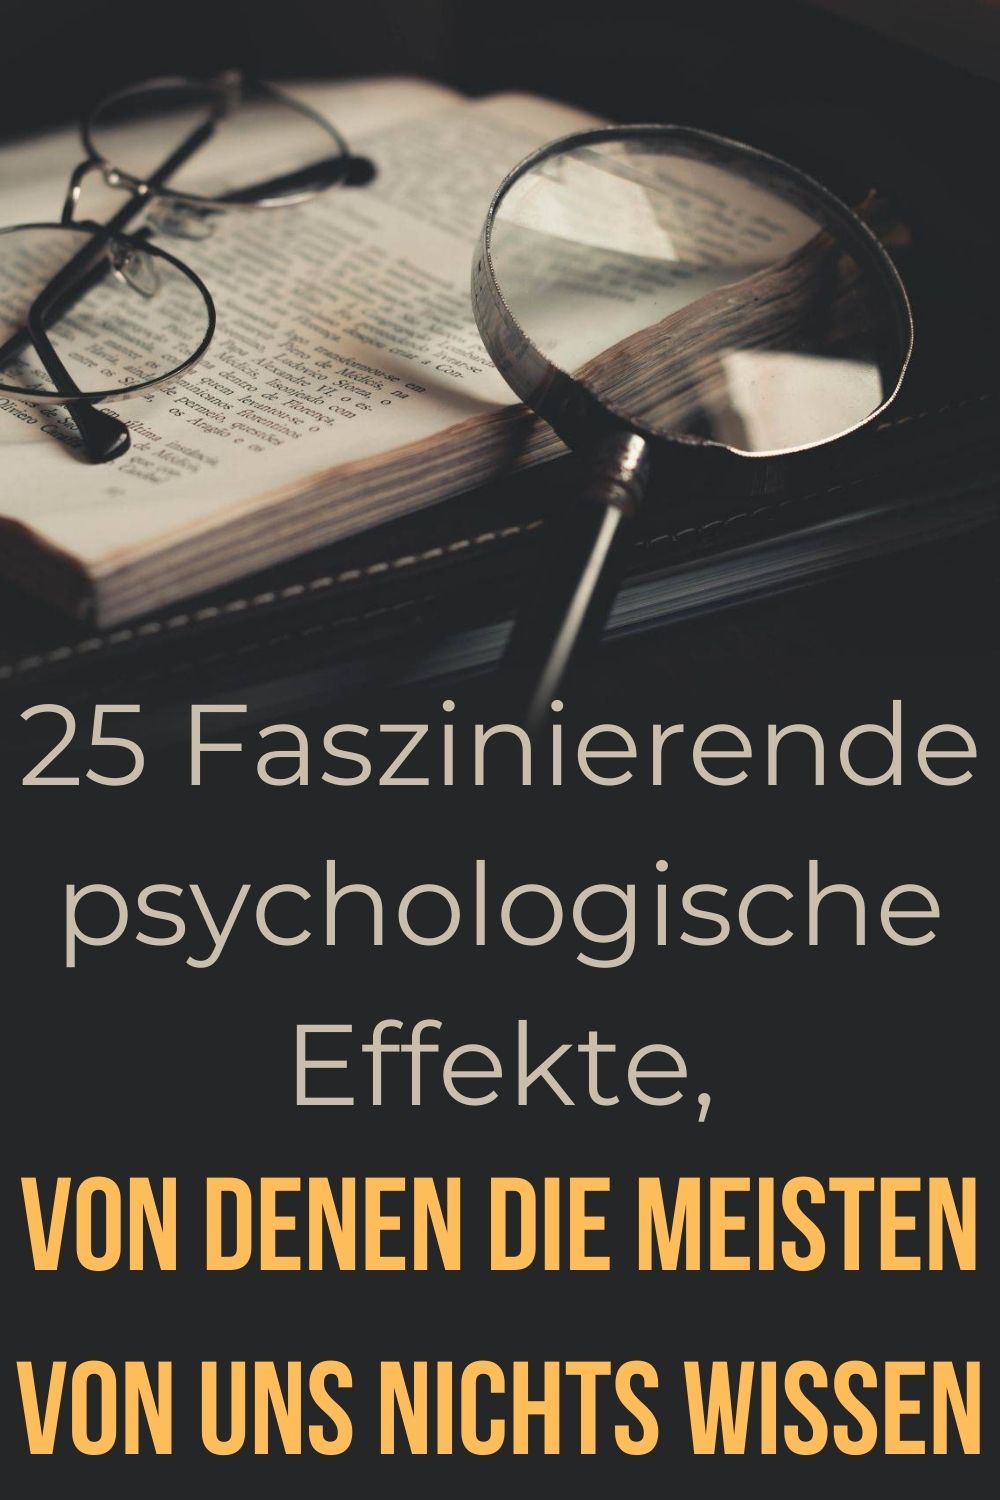 25-Faszinierende-psychologische-Effekte-von-denen-die-meisten-von-uns-nichts-wissen